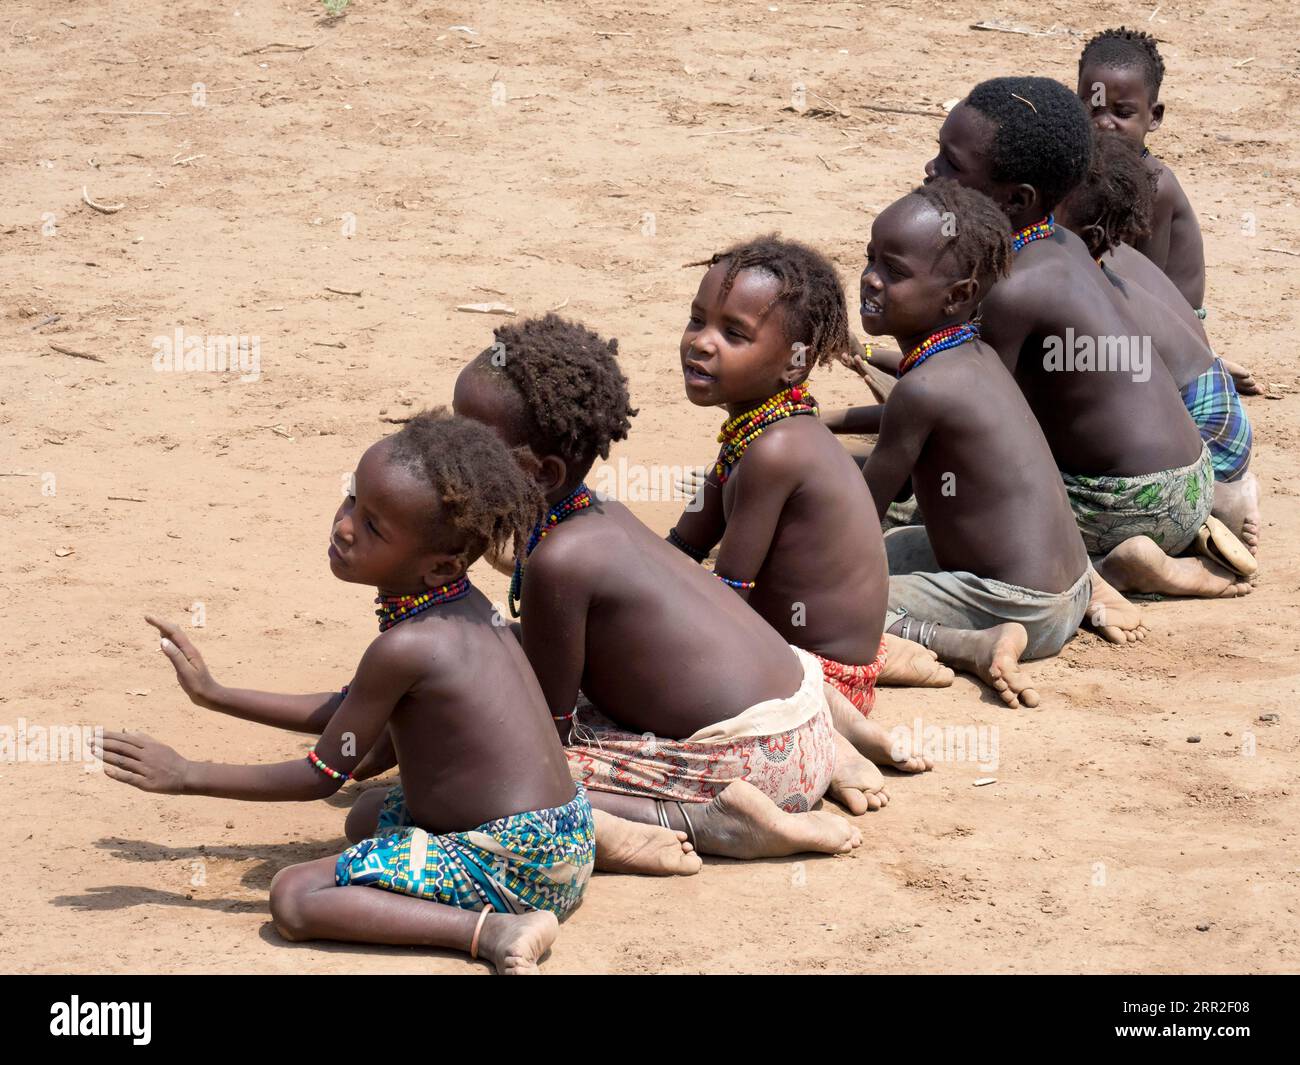 Singing happy children sitting on sandy ground, Dassanech tribe, Ethiopia Stock Photo